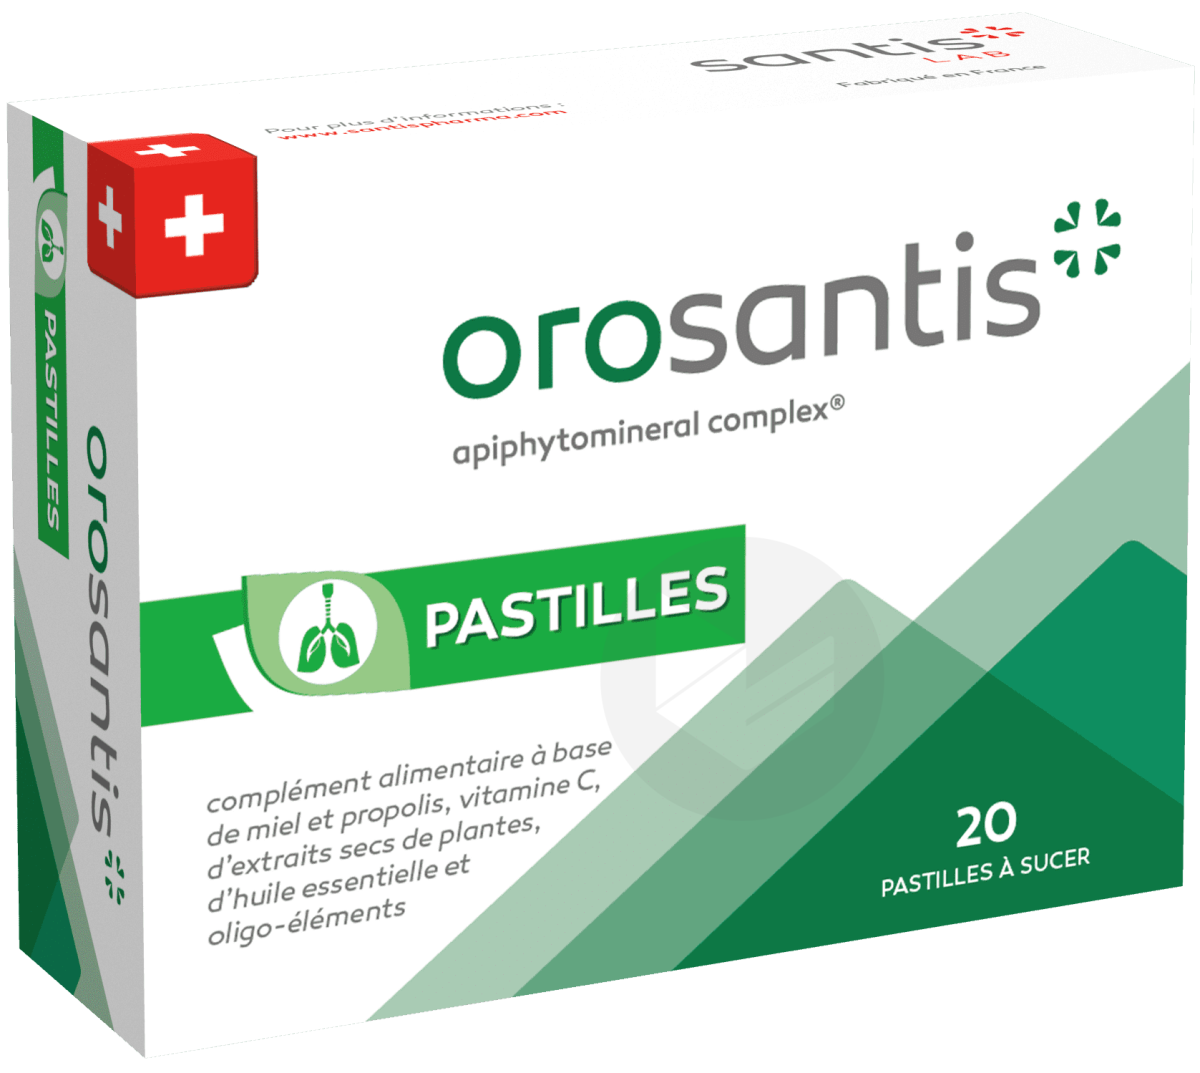 Orosantis 20 pastilles